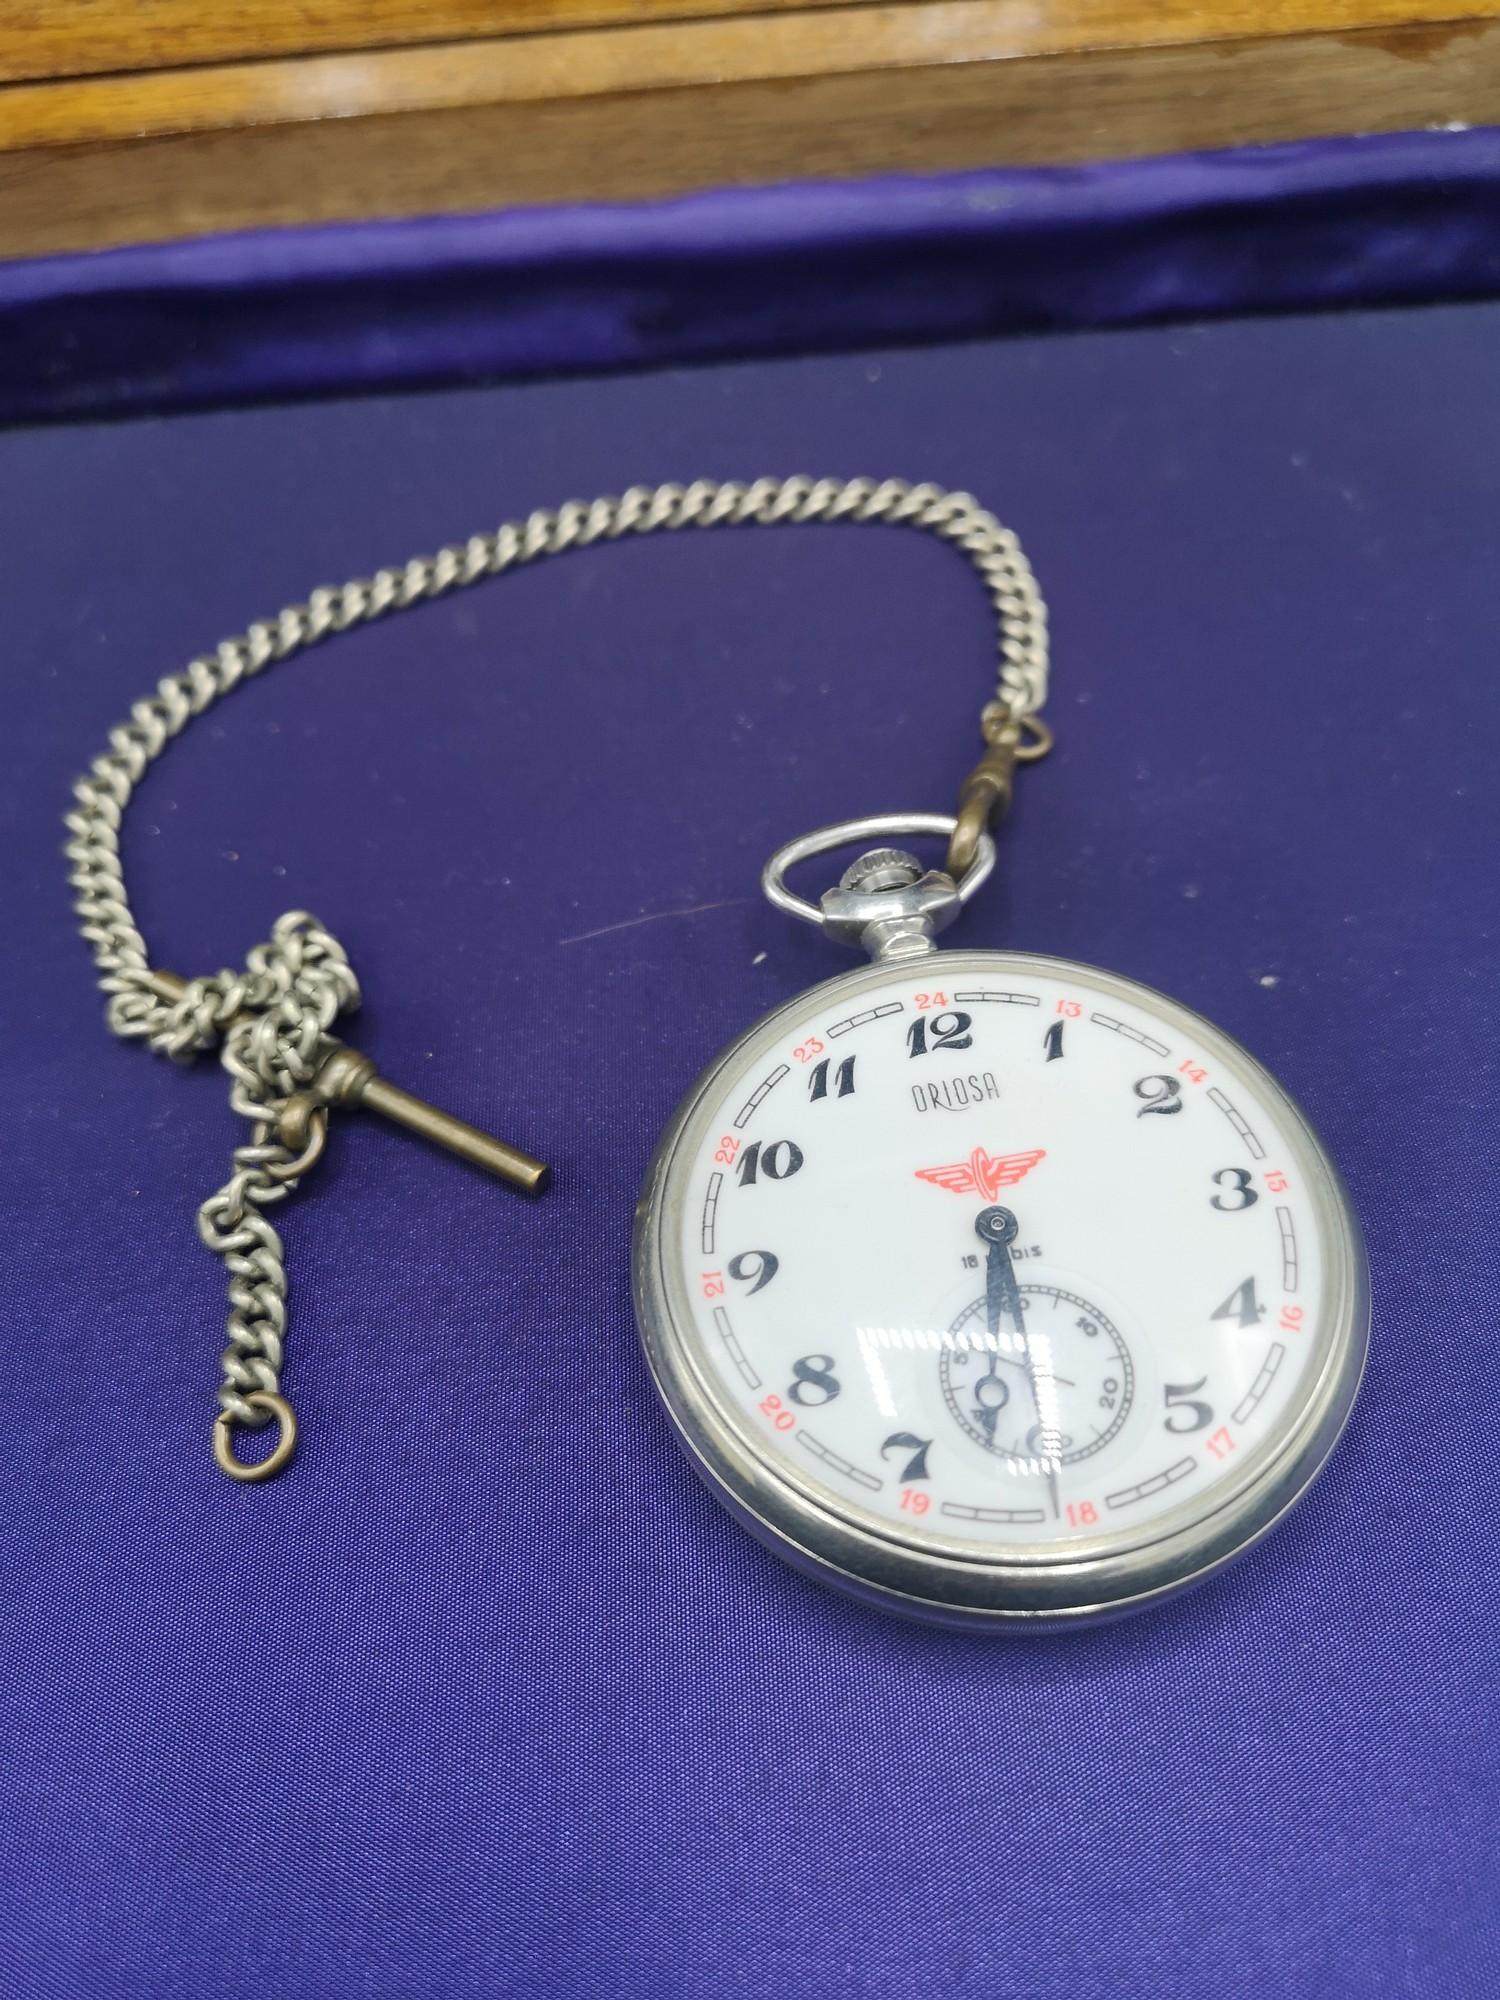 Railway mans presentation pocket watch with albert chain in working order.